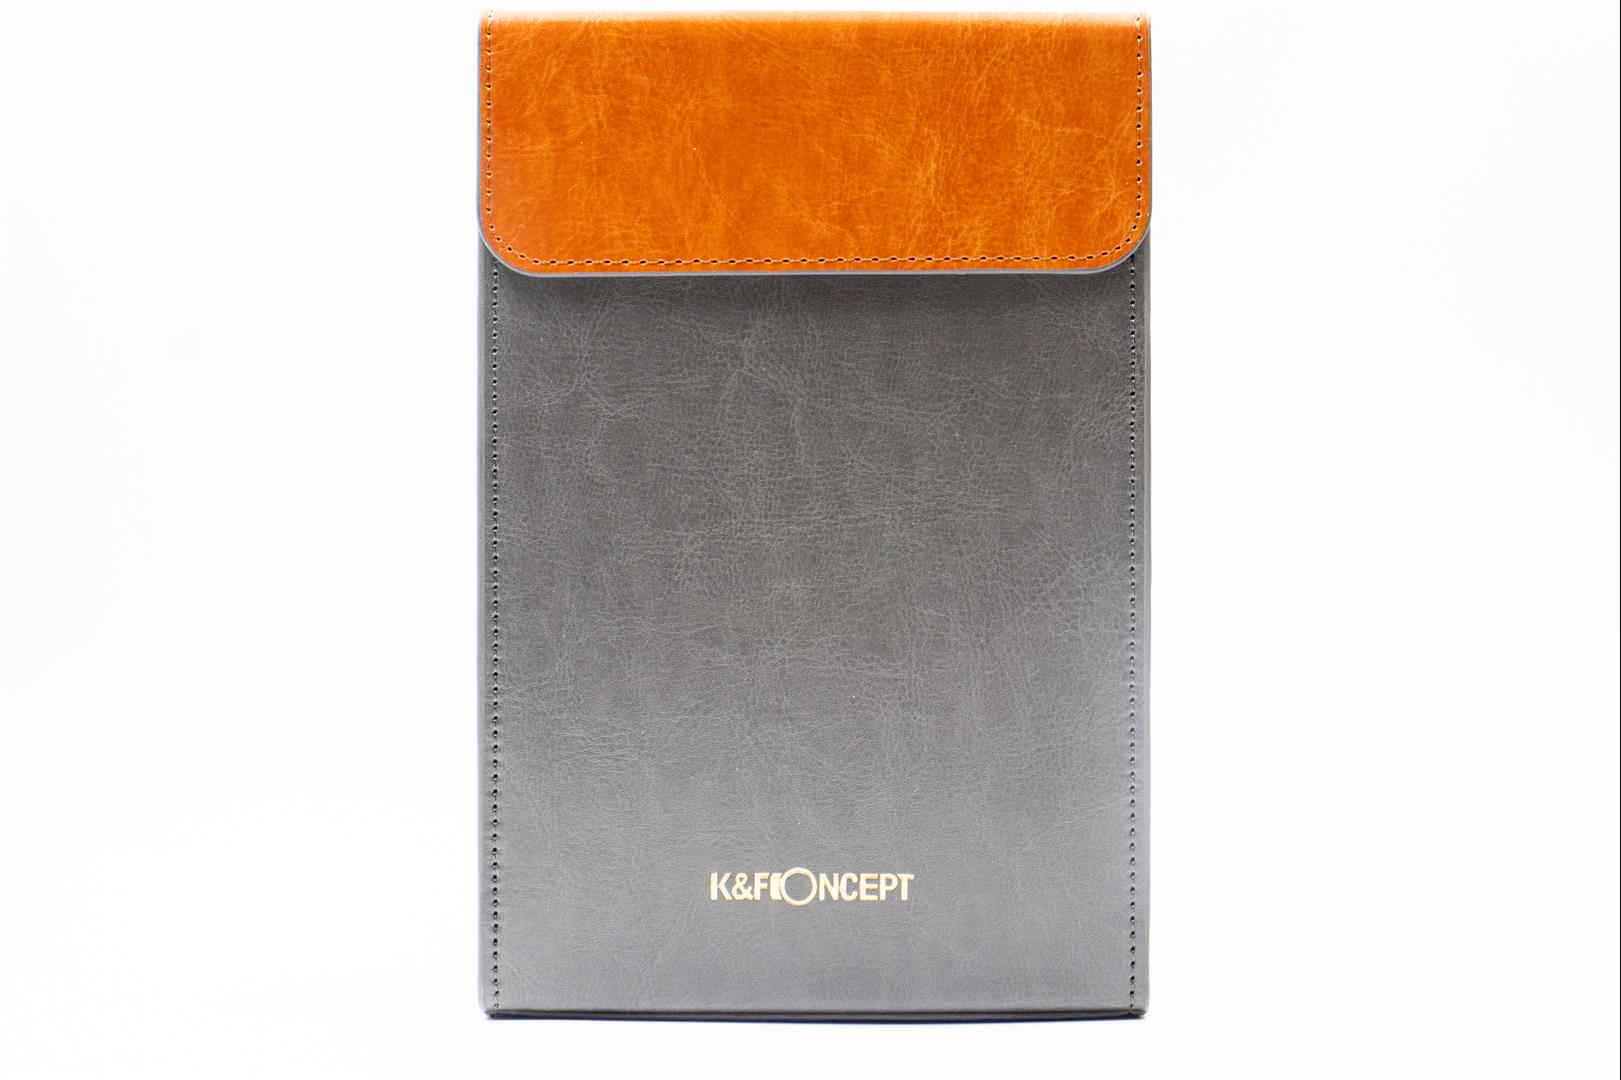 K&F Concept Square Filter Holder System Pro Kit